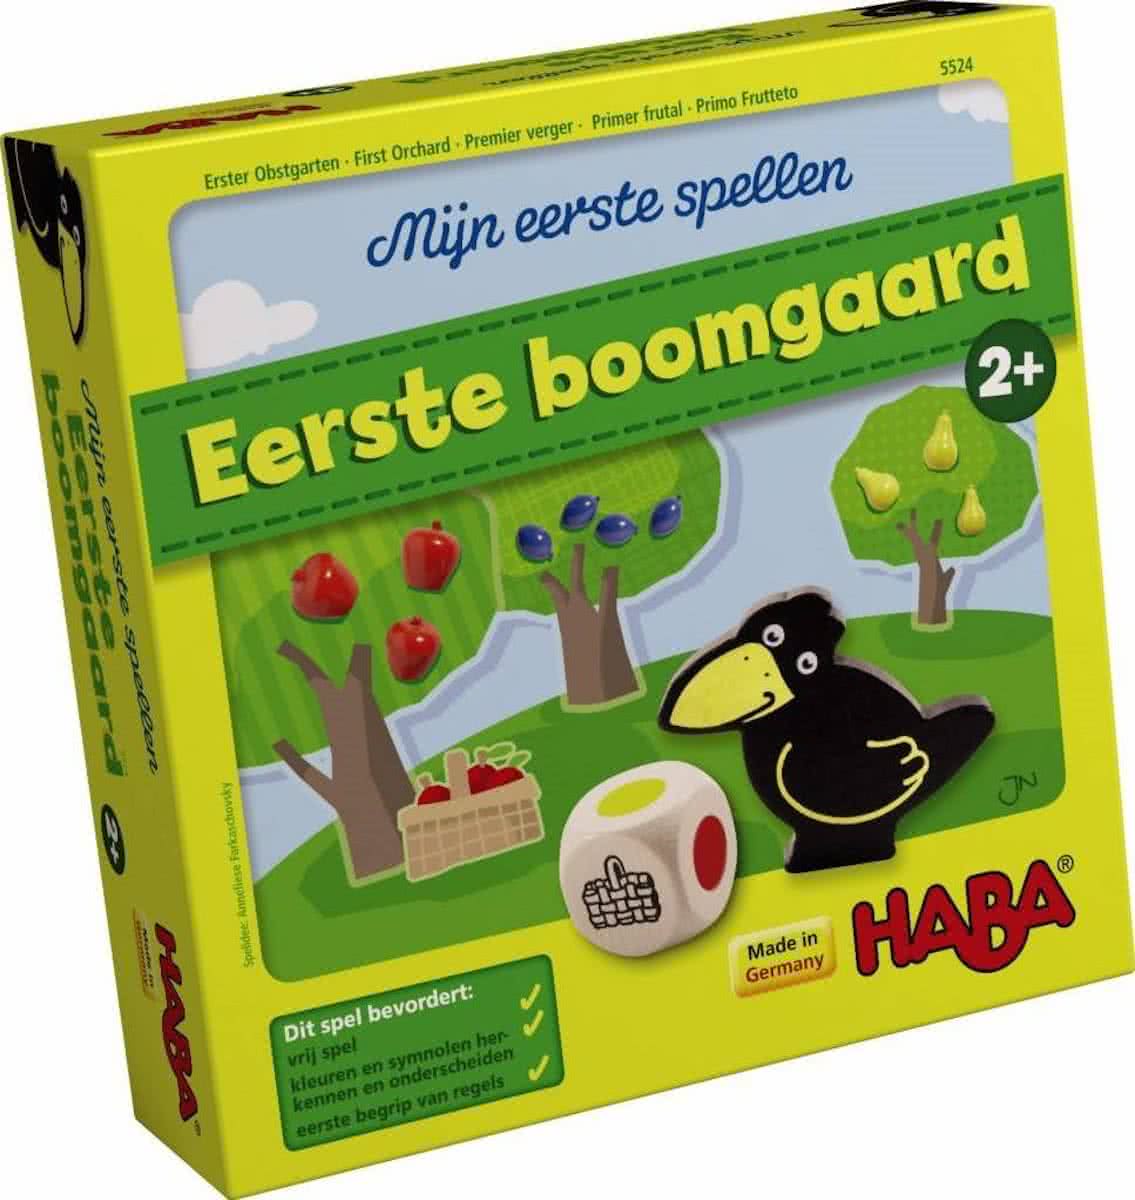 Haba Eerste Boomgaard - Kinderspel